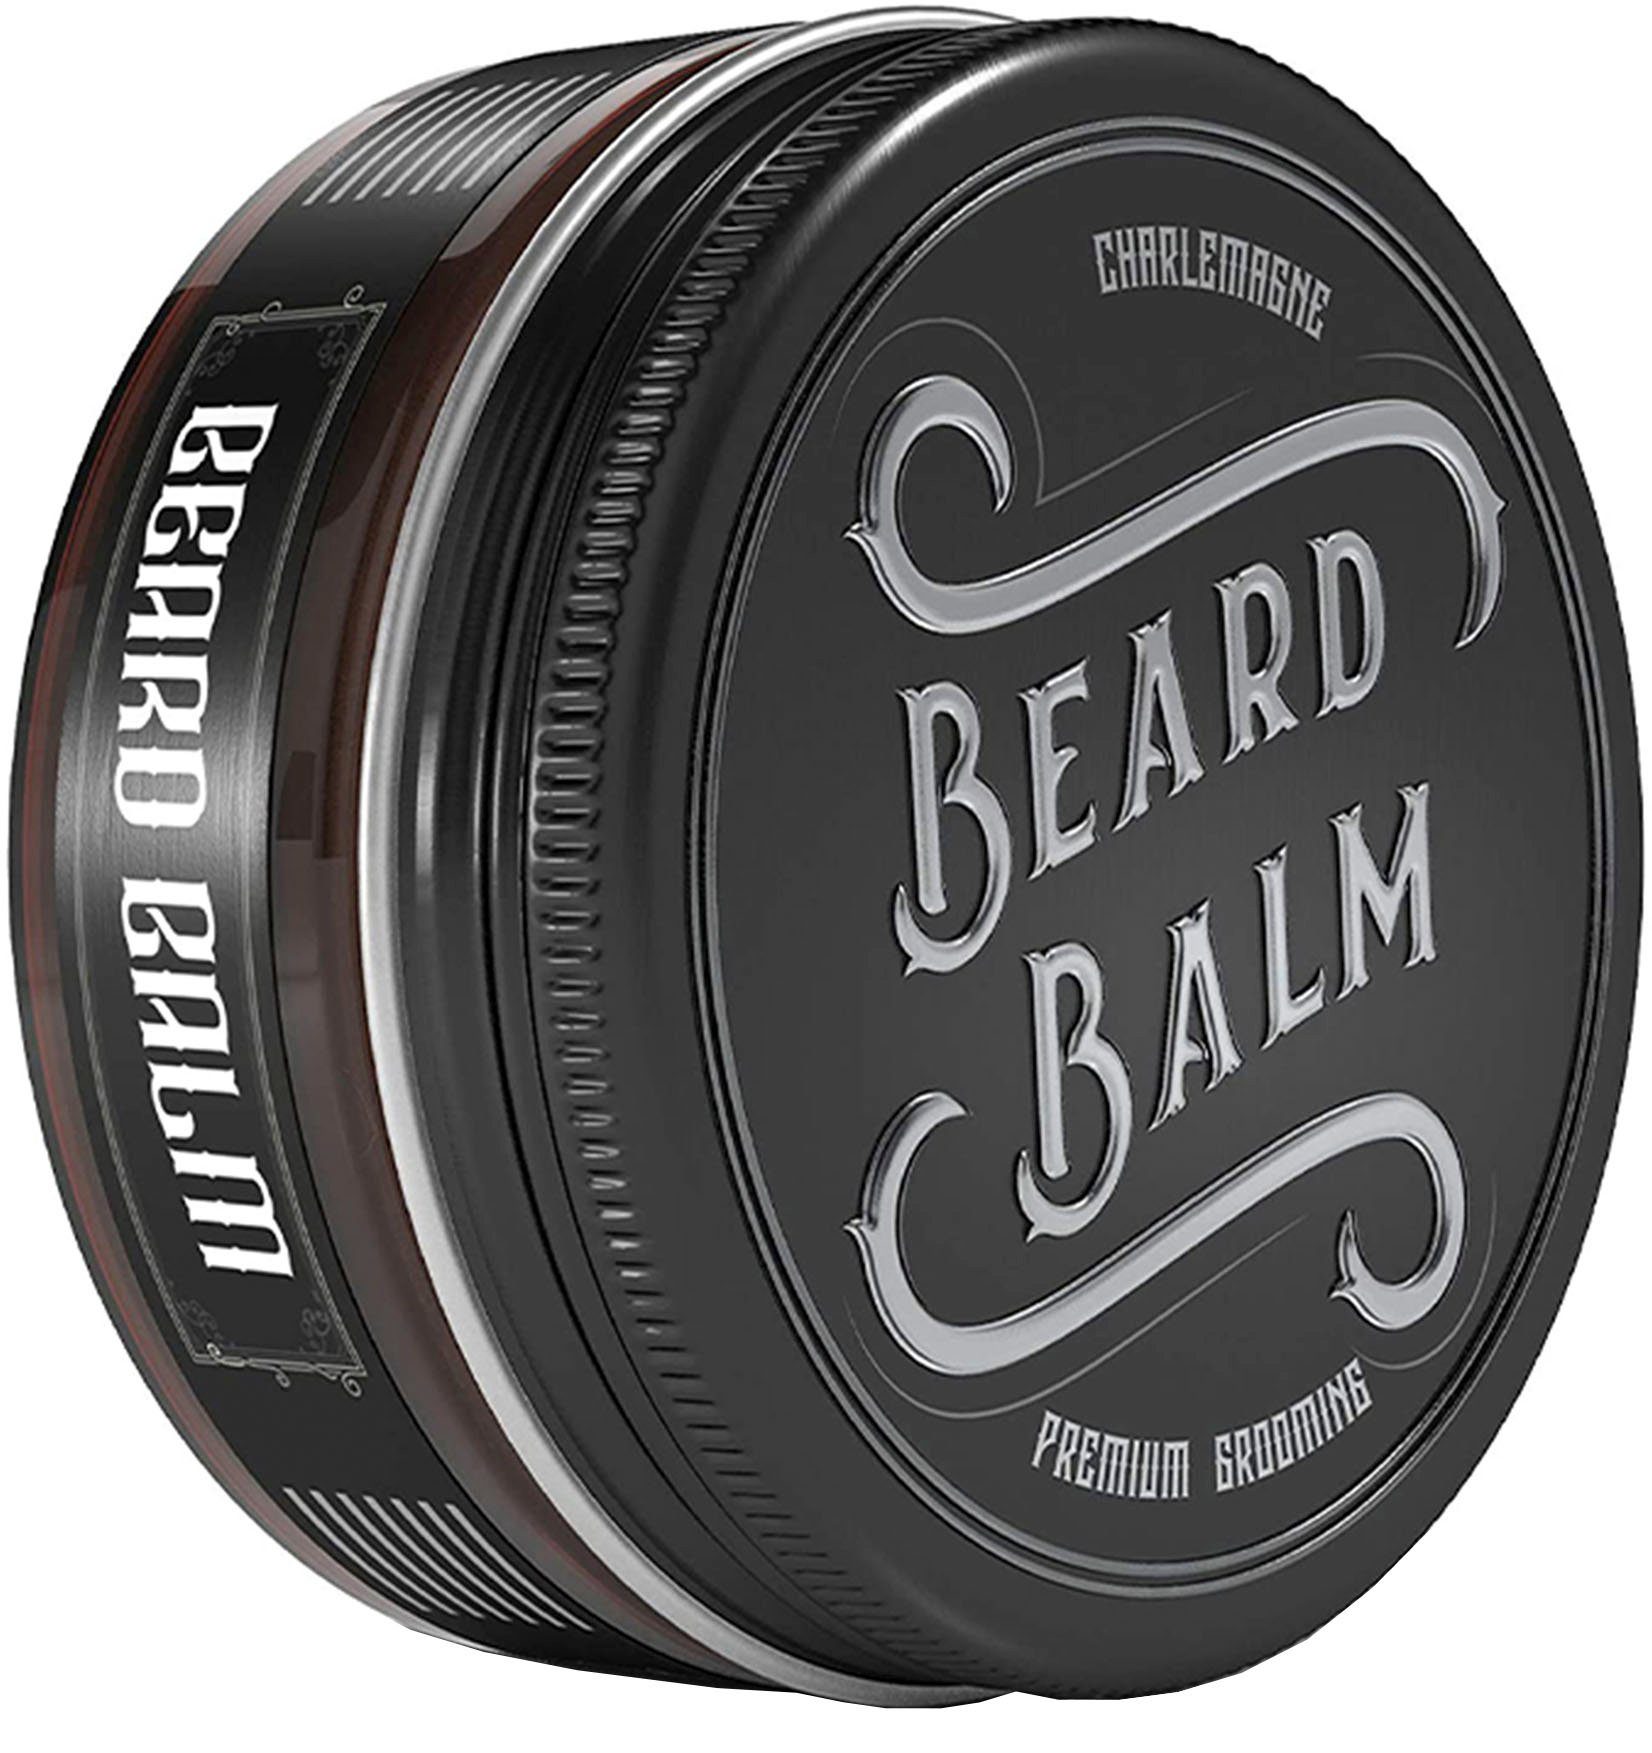 CHARLEMAGNE Bartbalsam Beard Balm | Bartcremes